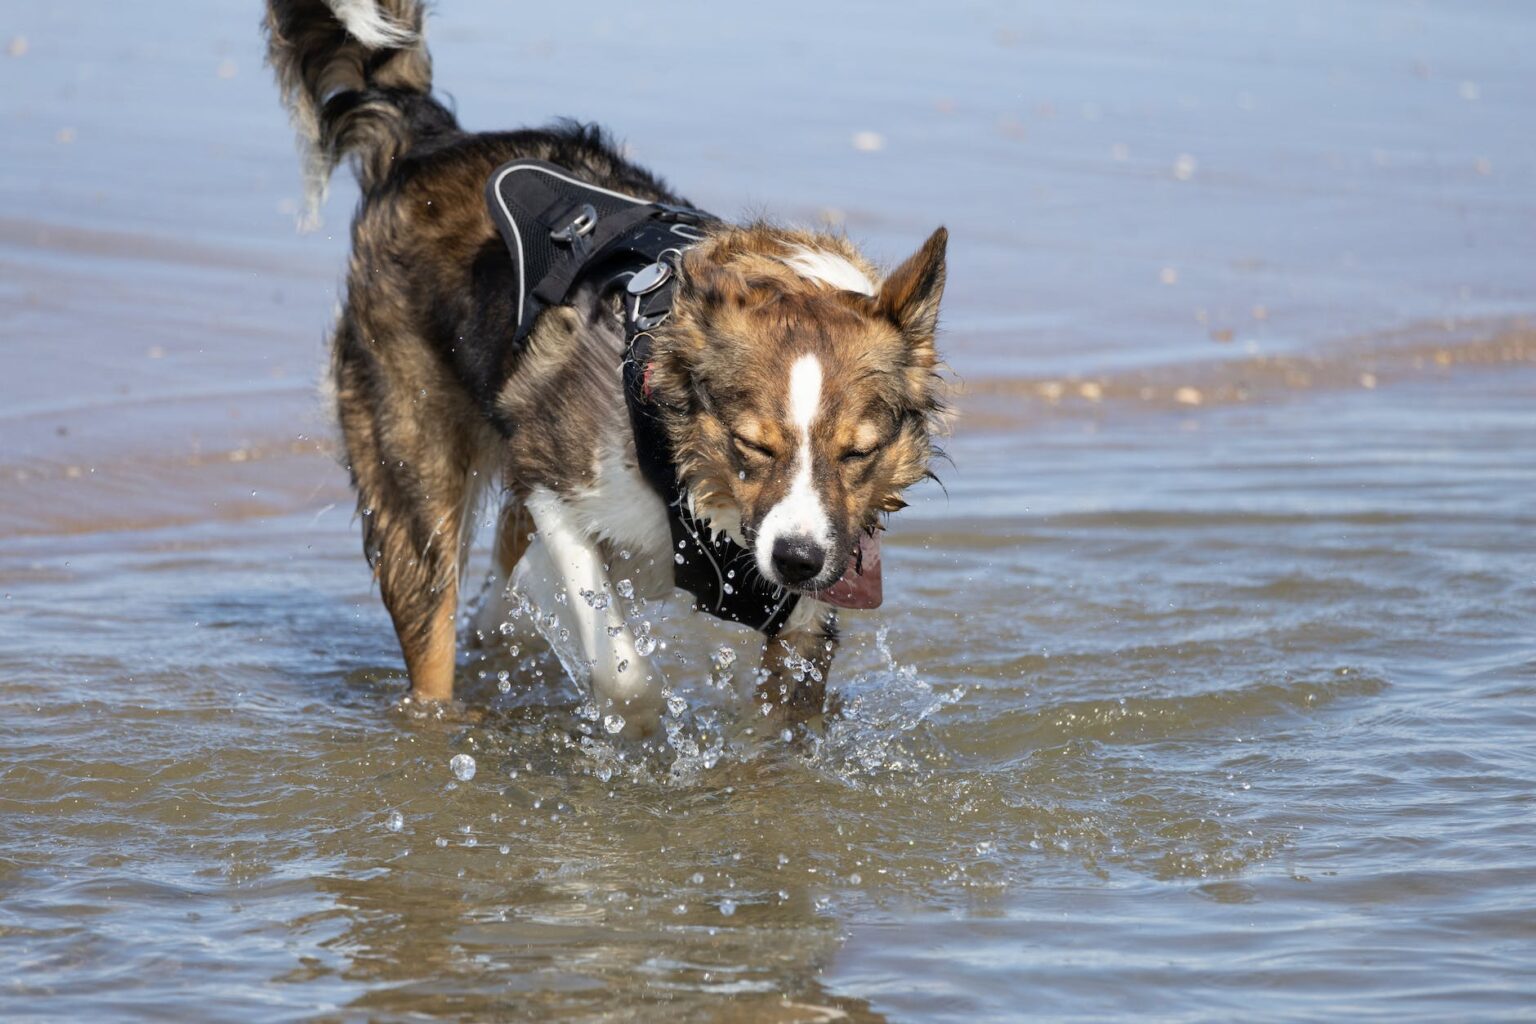 finanzgrundlagen.de - Rundum-Sorglos-Schutz für deinen besten Freund: Die ultimative Haftpflichtversicherung für Hunde ohne Selbstbeteiligung